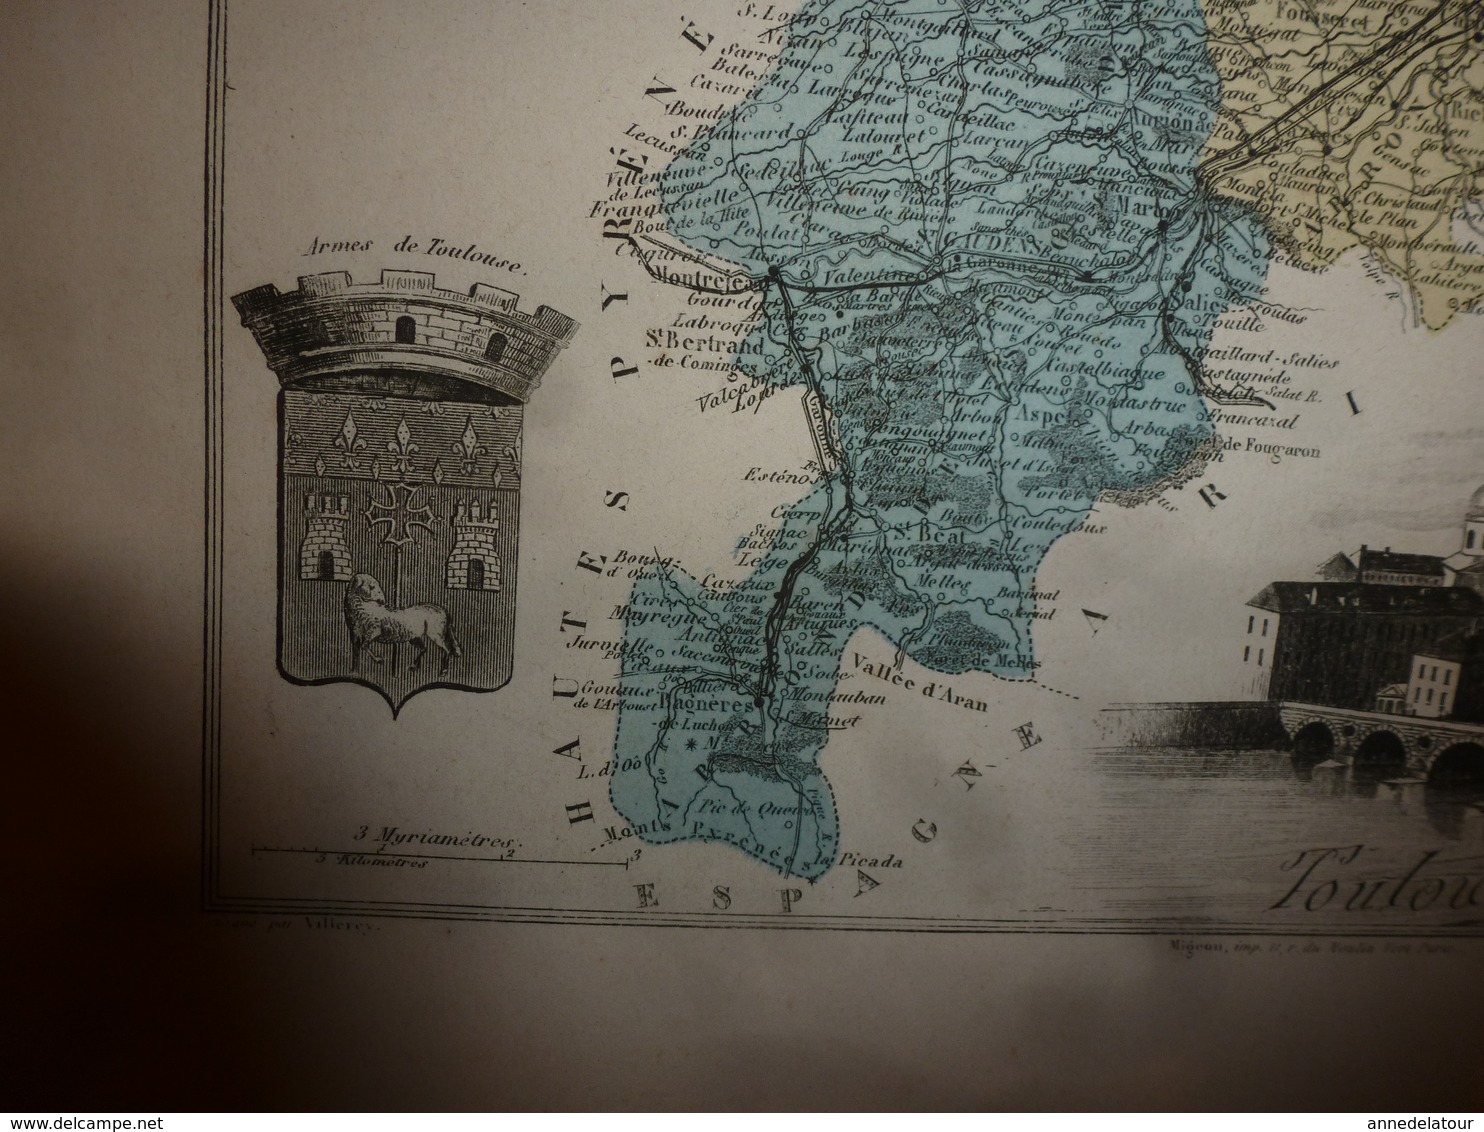 1880 HAUTE GARONNE (Toulouse,Muret,St-Gaudens,etc) Carte Géographique-Descriptive:grav. taille douce-Migeon,géographe.